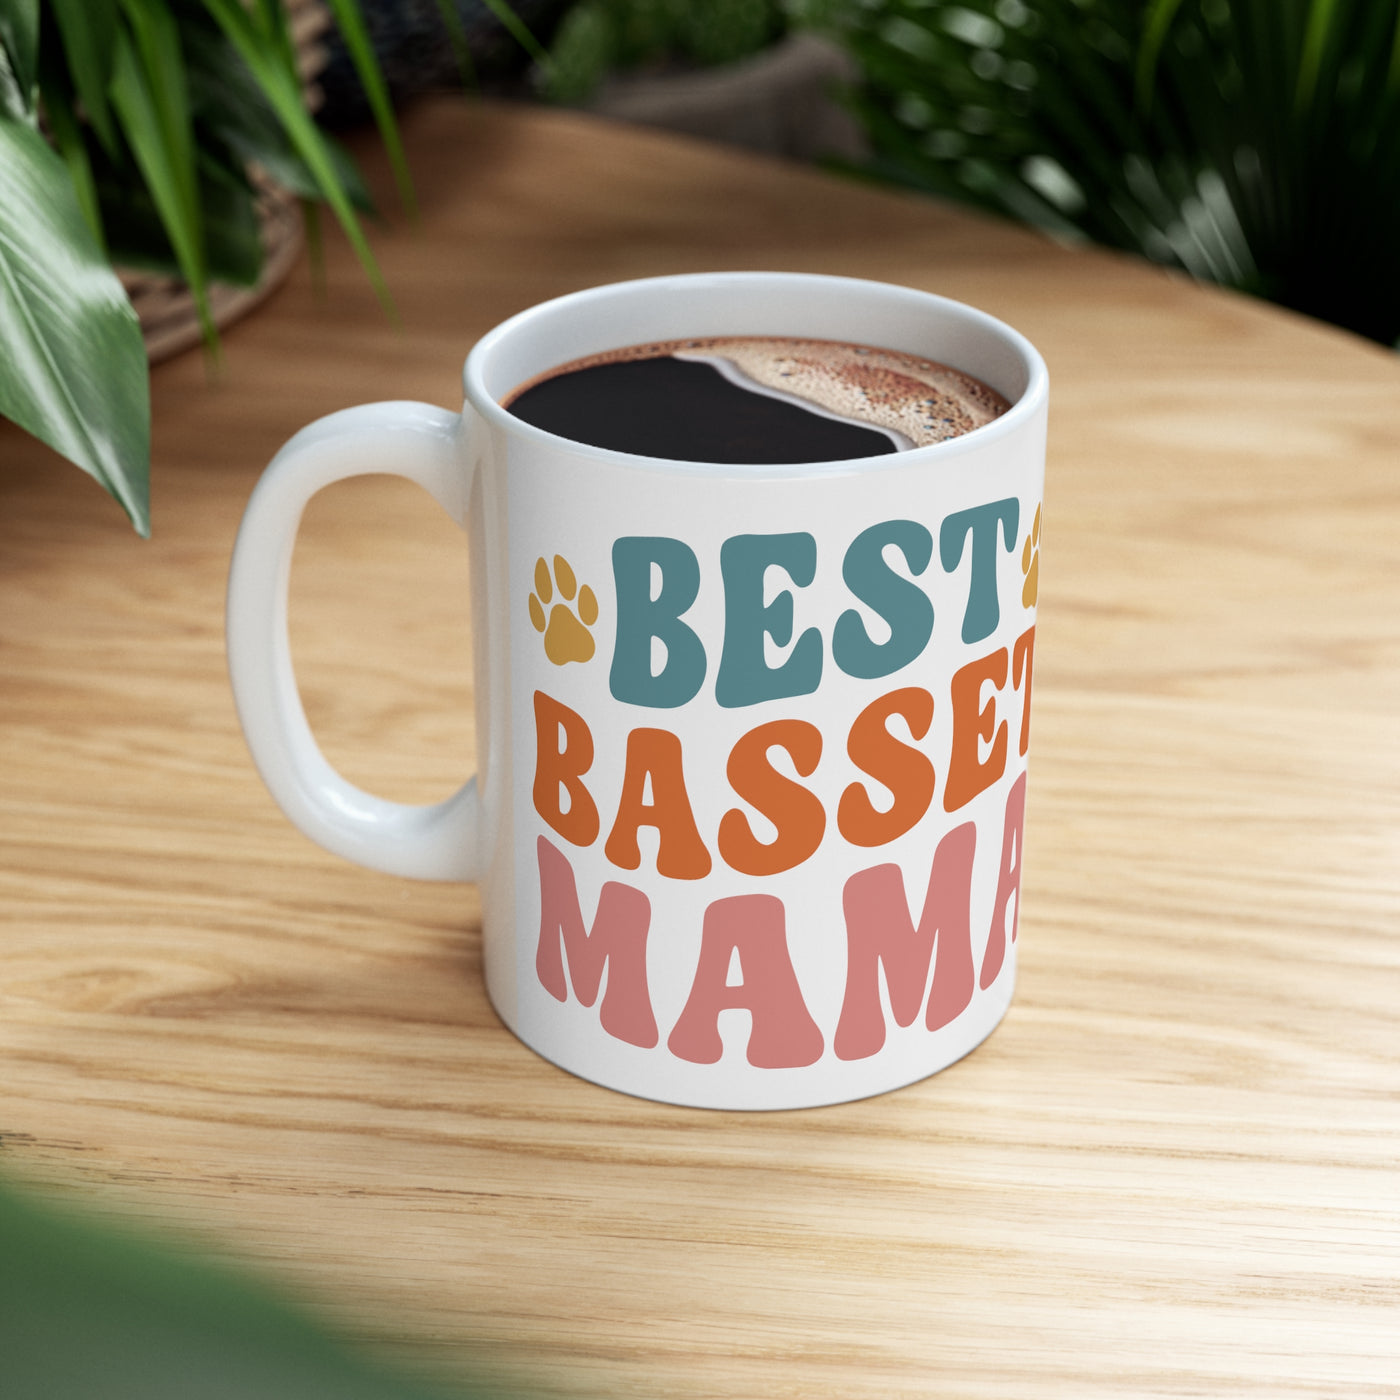 Best Basset Mama Ceramic Mug - Rocking The Dog Mom Life